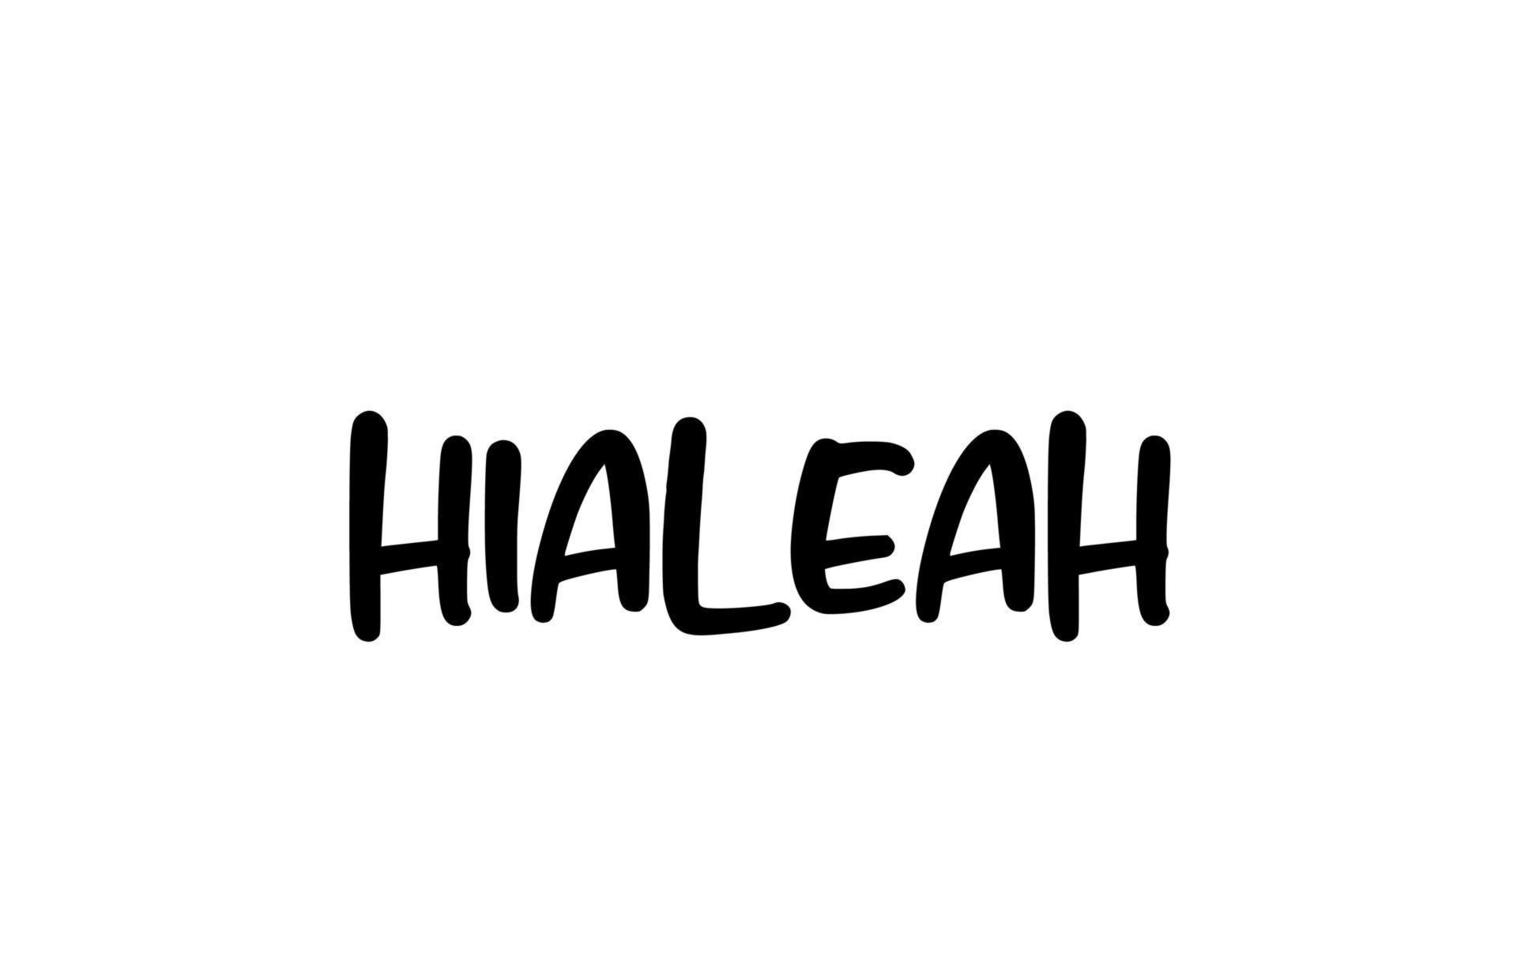 hialeah cidade manuscrita tipografia palavra texto mão lettering. texto de caligrafia moderna. cor preta vetor